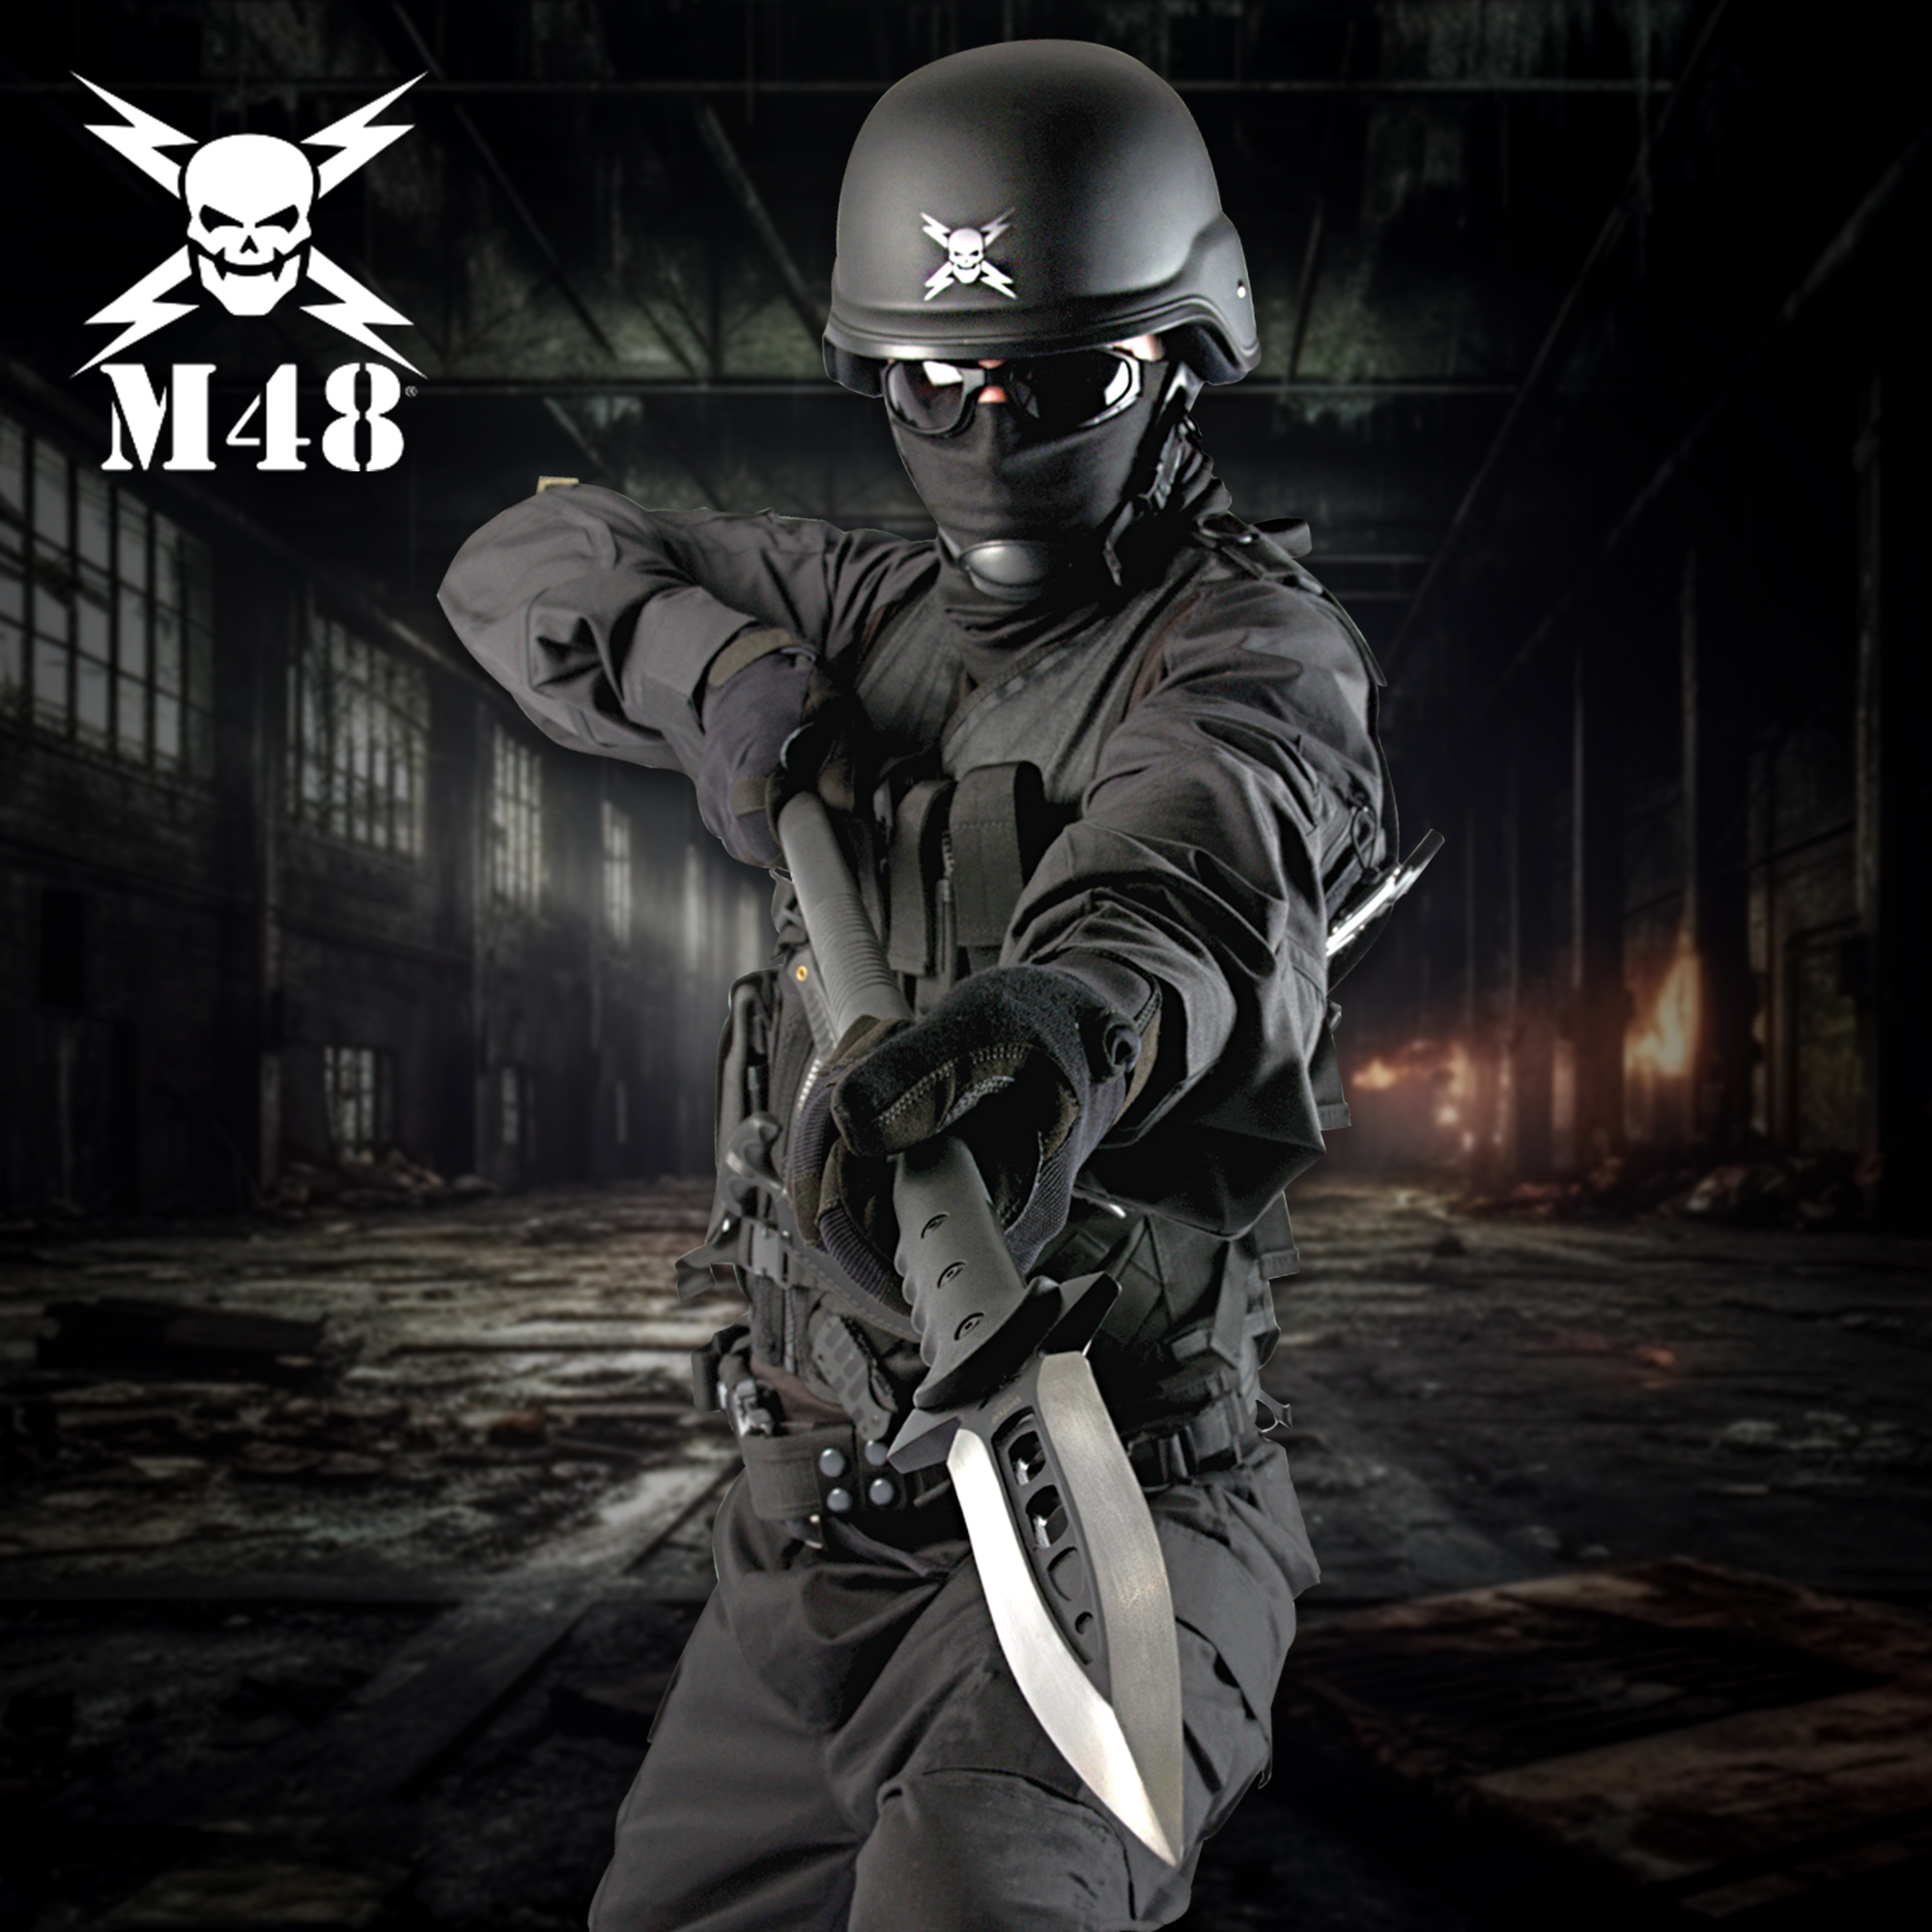 M48 Kommando Talon Survival Spear | BUDK.com - Knives & Swords At The ...